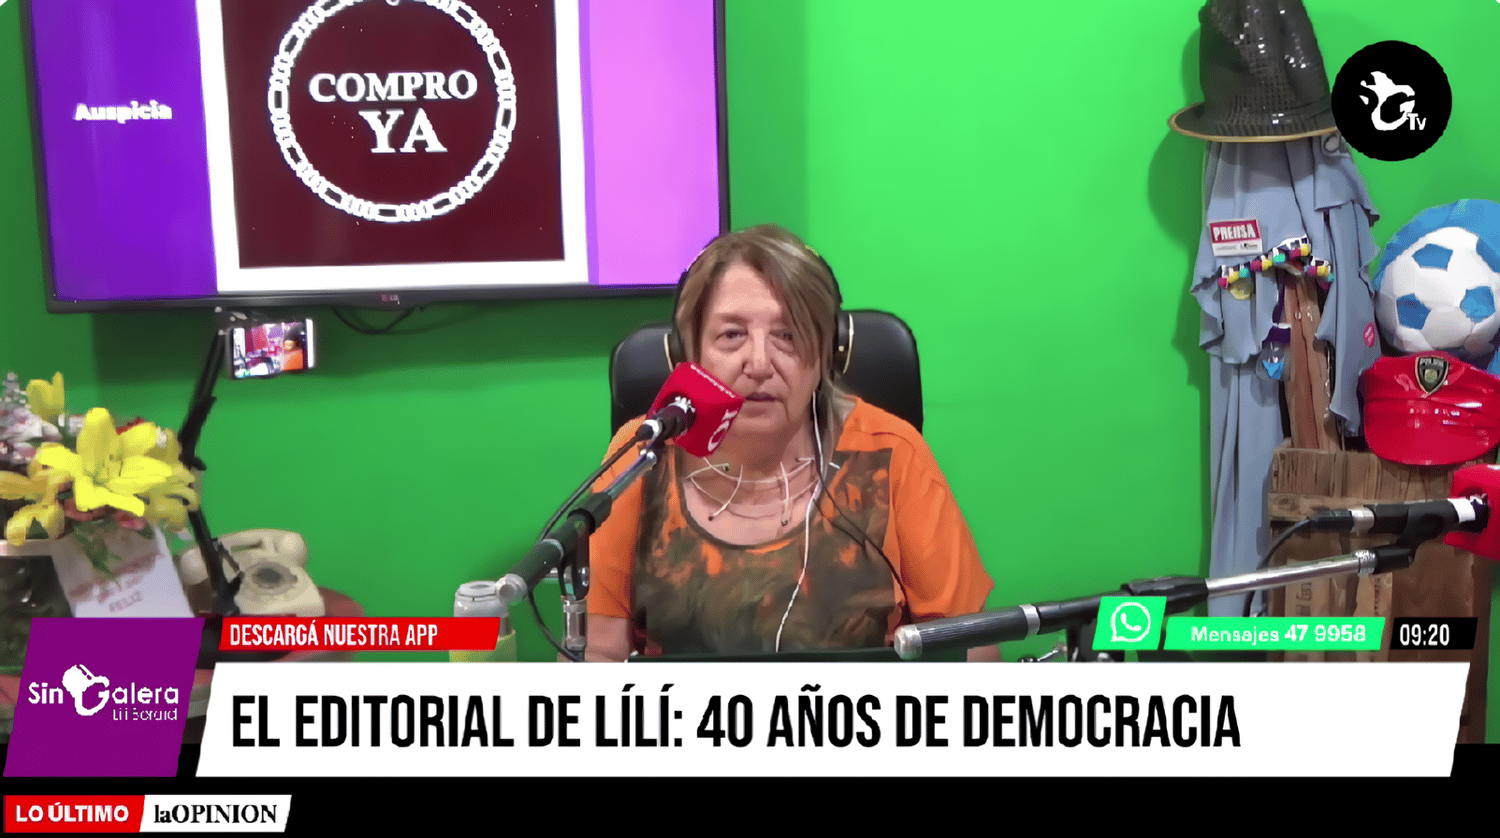 40 años de democracia: el editorial de Lilí Berardi en Sin Galera